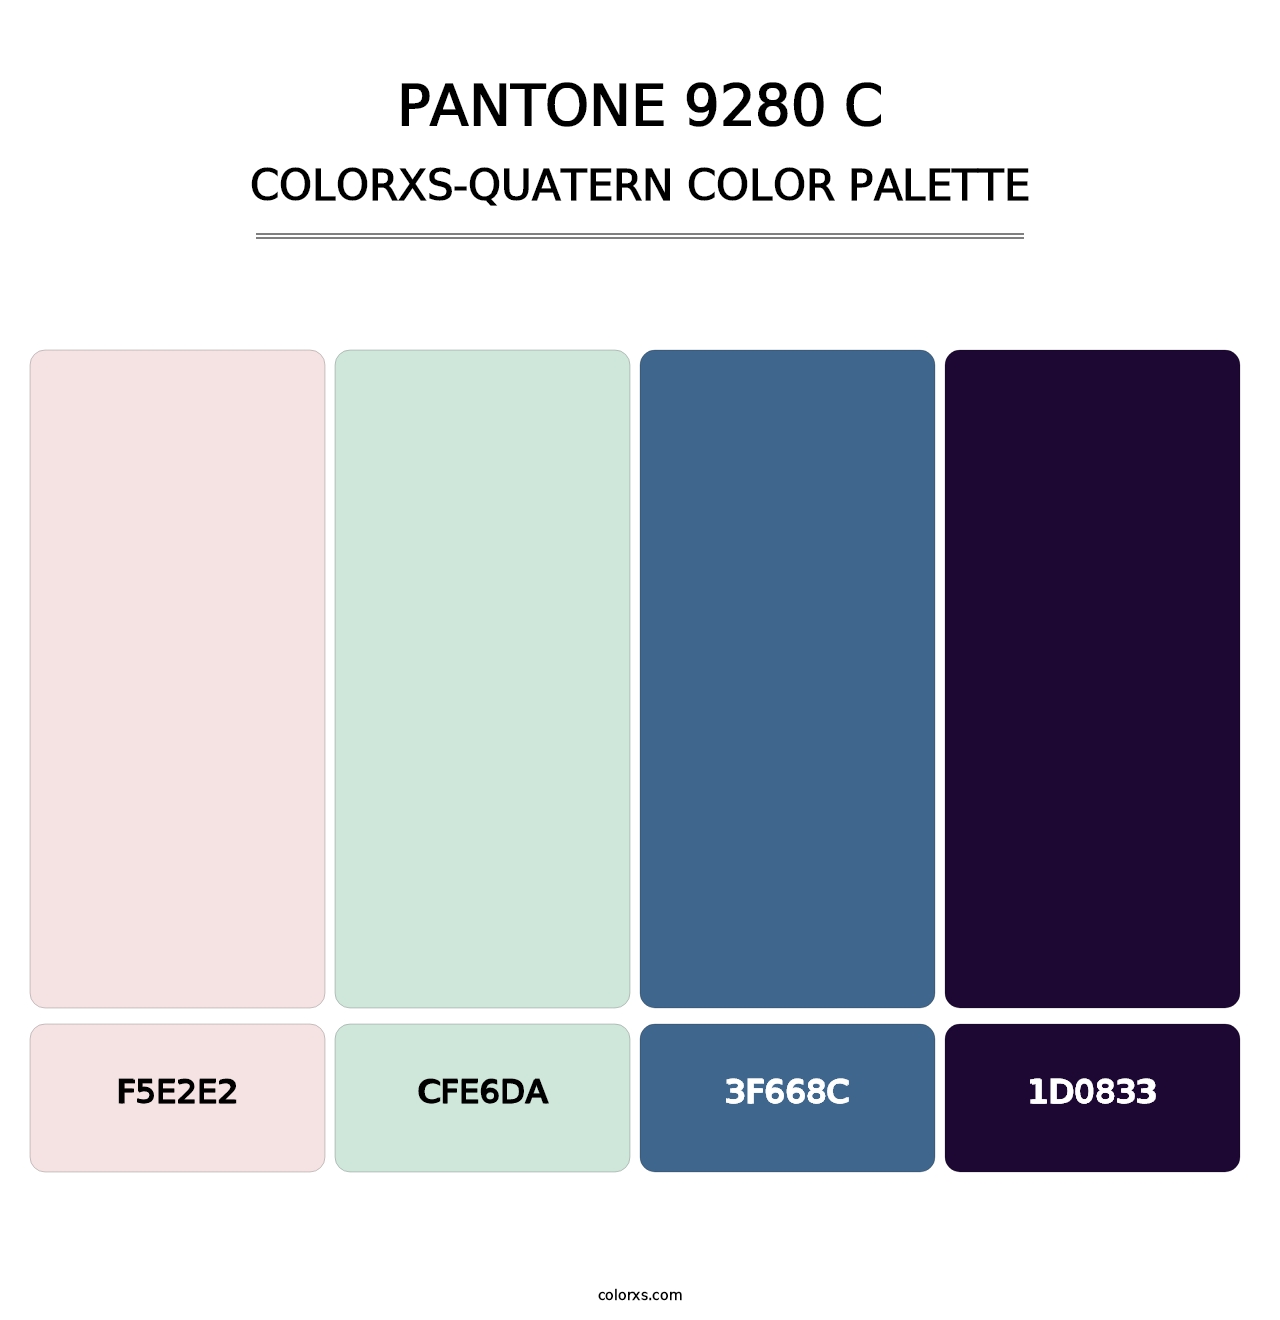 PANTONE 9280 C - Colorxs Quatern Palette